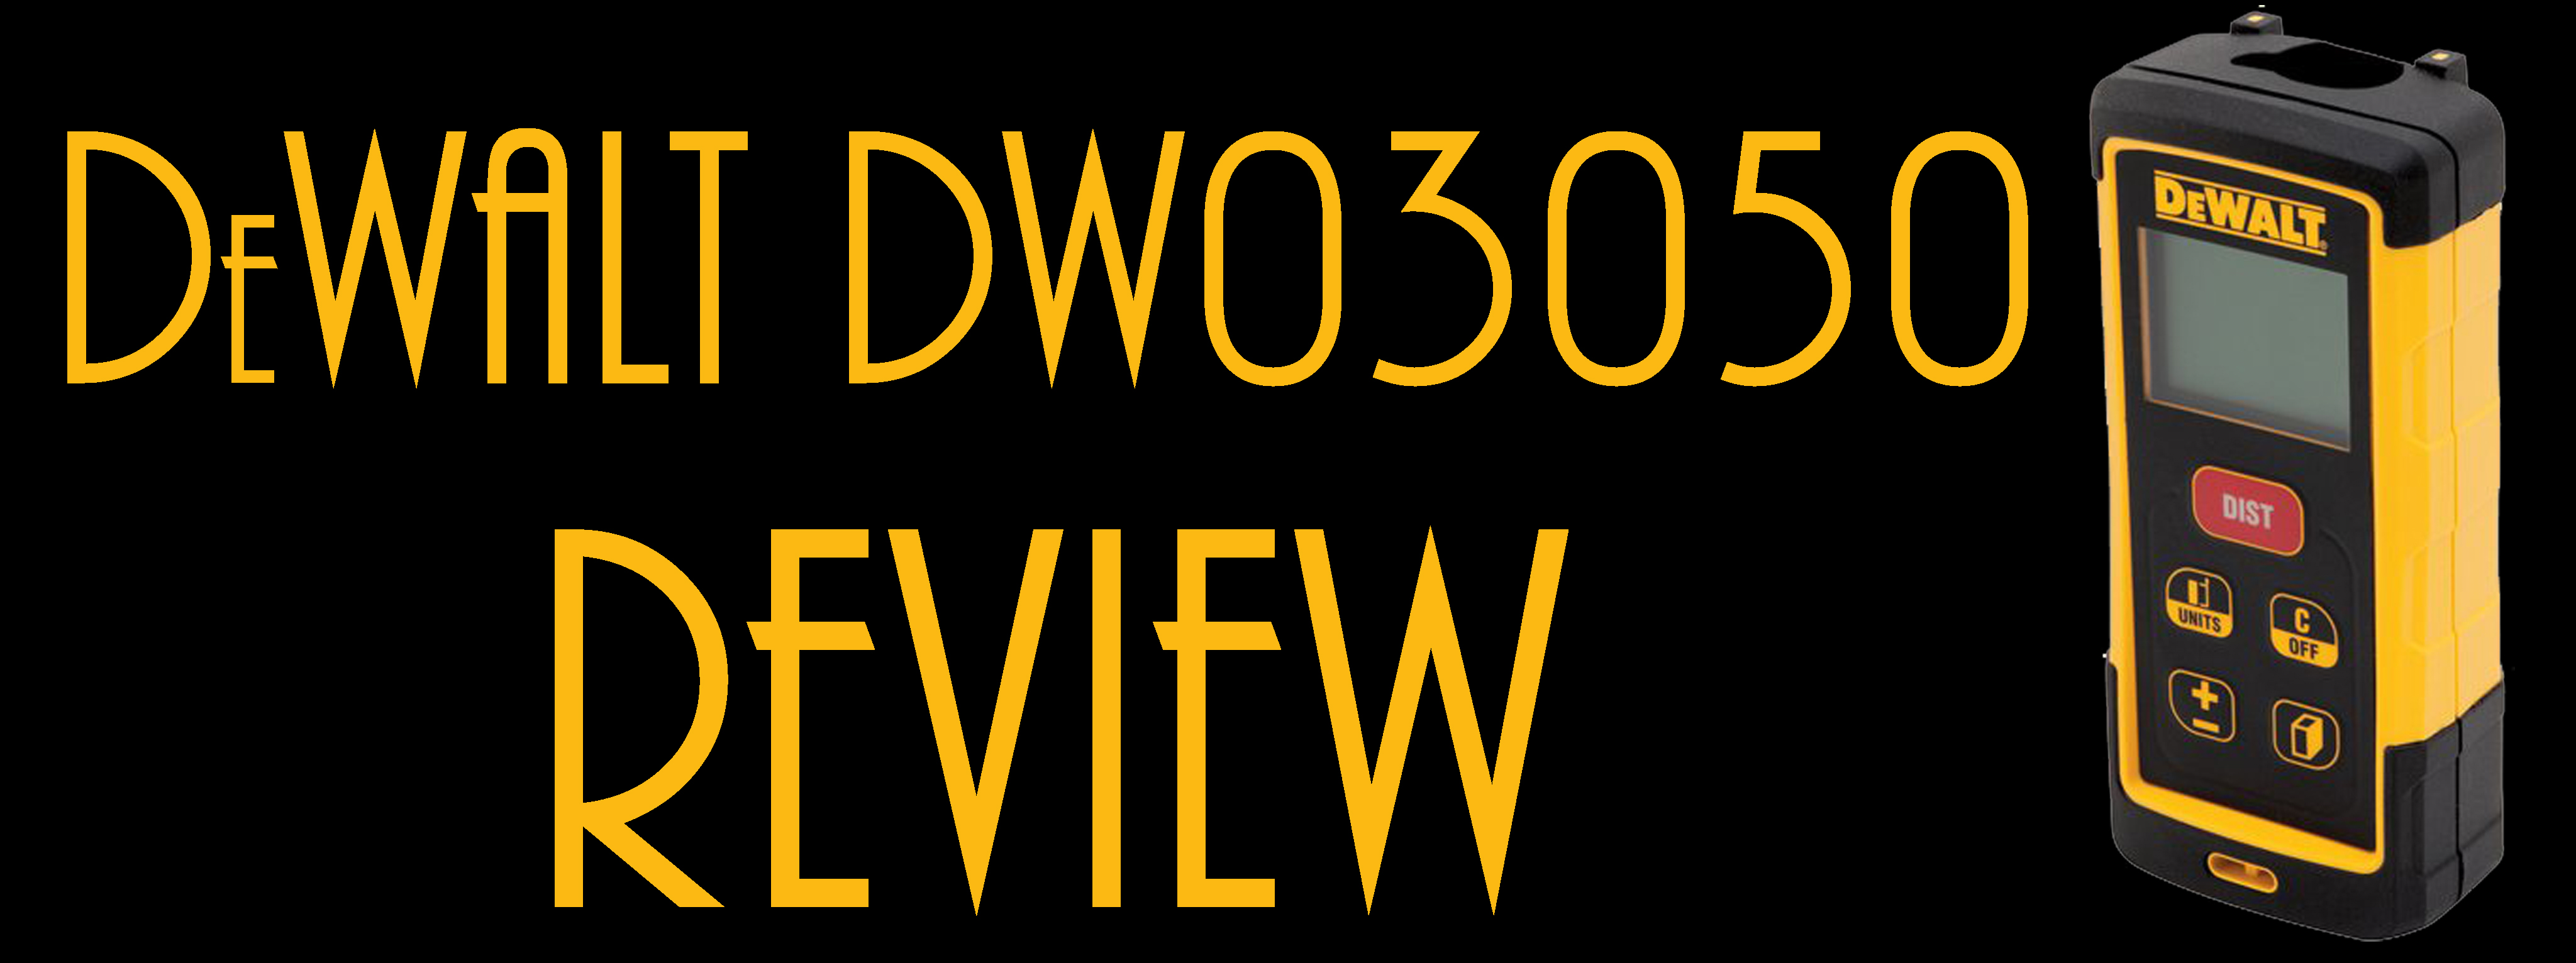 Feature Image for DEWALT DW03050 Review